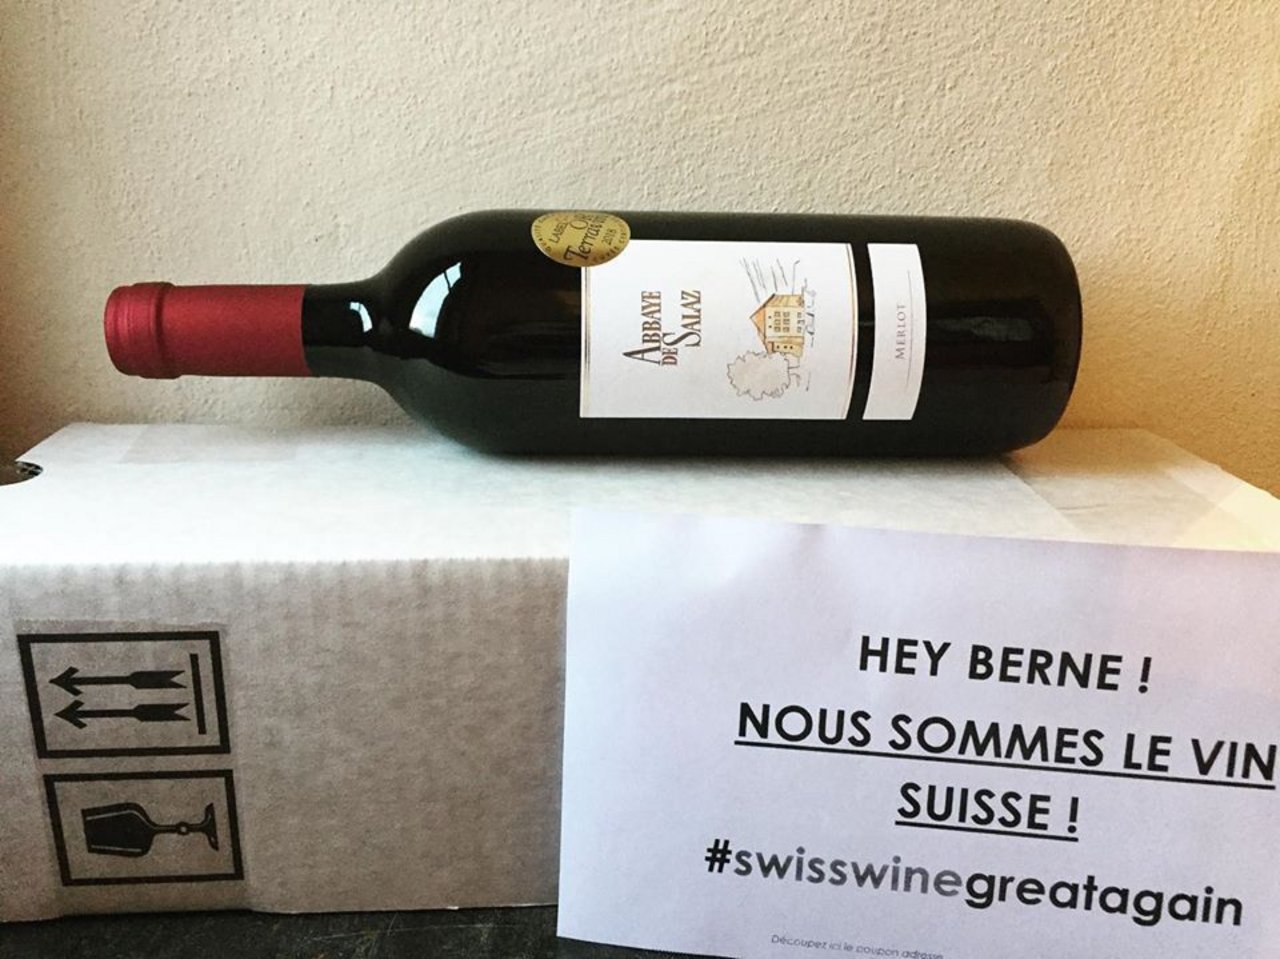 Weinflaschen mit Botschaft sollen die kommende Session im Parlament ganz im Zeichen des Schweizer Weins eröffnen. (Bild Abbaye de Salaz à Ollon/ Facebook)